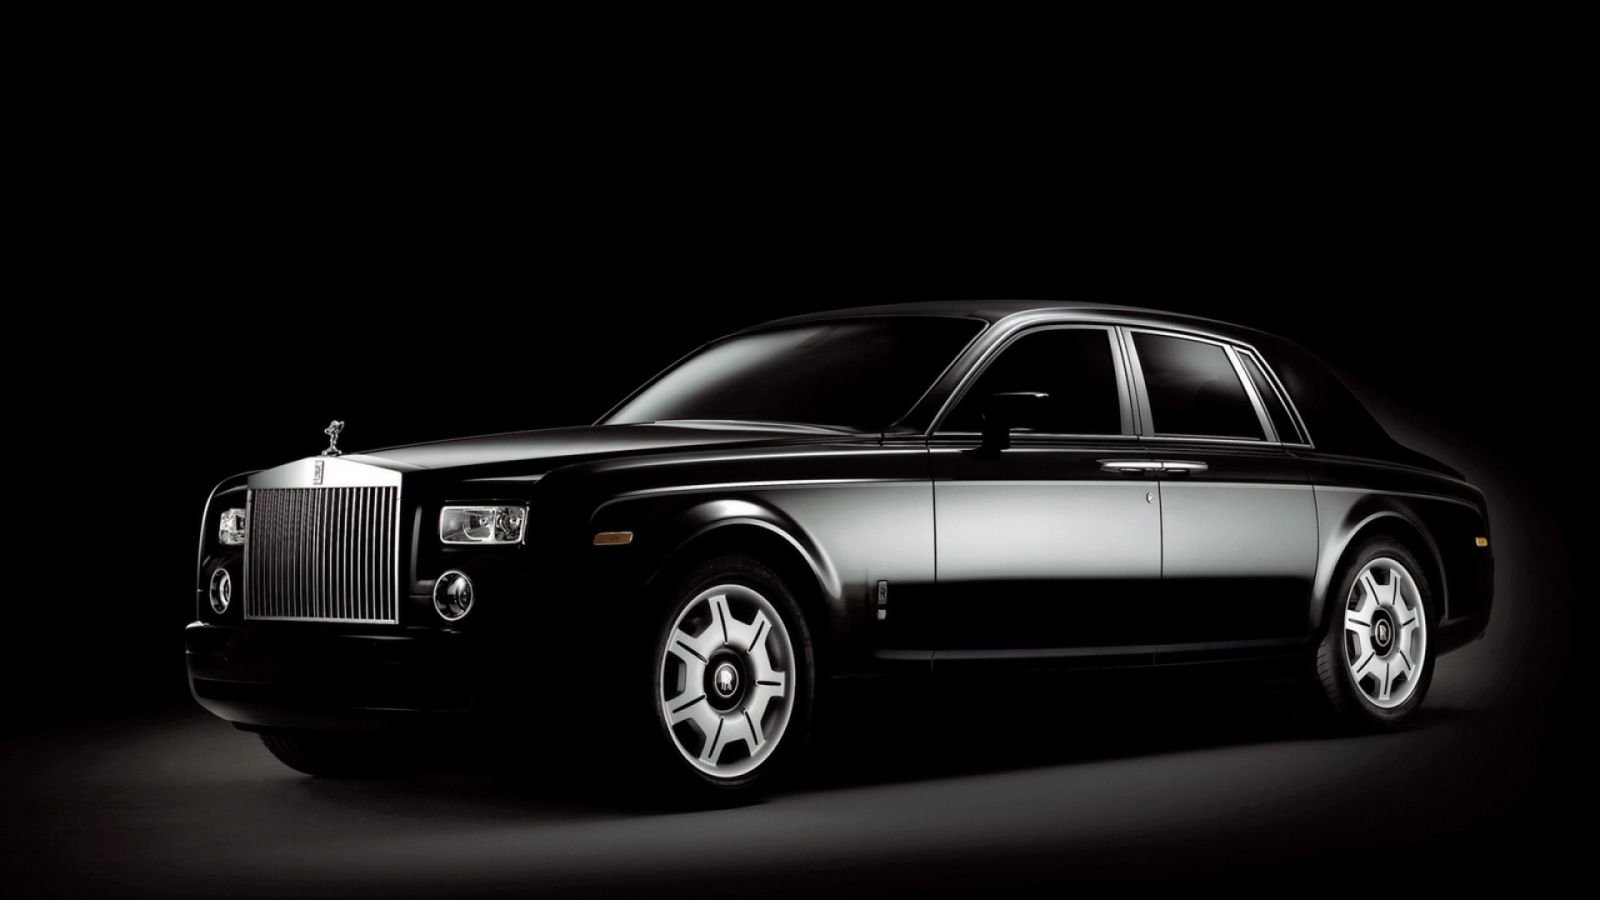 Hd Wallpaper - Black Rolls Royce Car , HD Wallpaper & Backgrounds